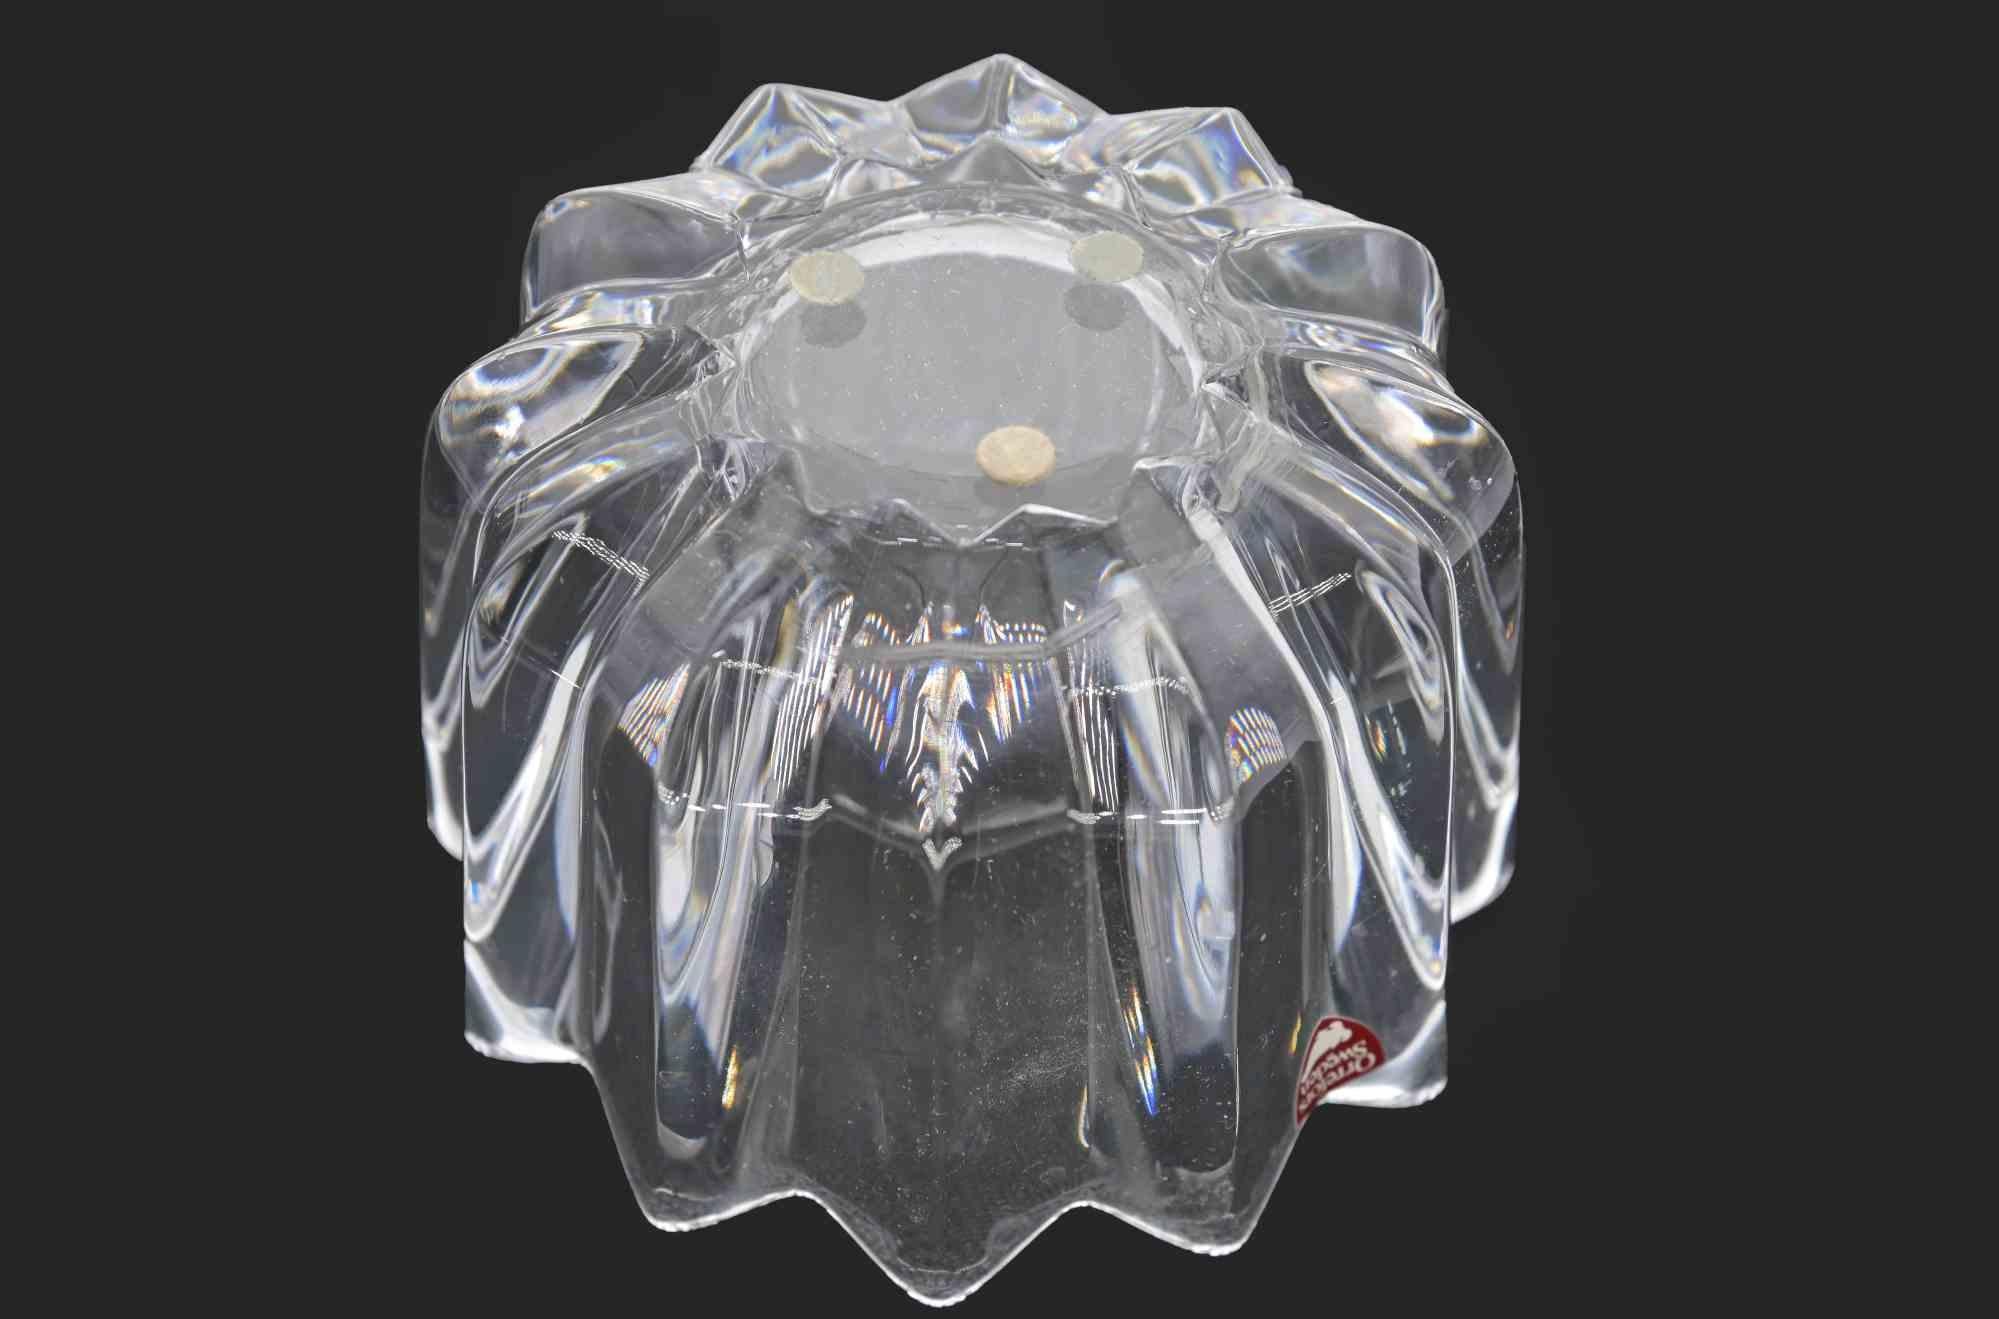 La jarre Orrefors sweden est un objet décoratif conçu par Orrefors Sweden, dans les années 1970. 

Vase en cristal, 7,5 x 11 cm.

Très bonnes conditions.